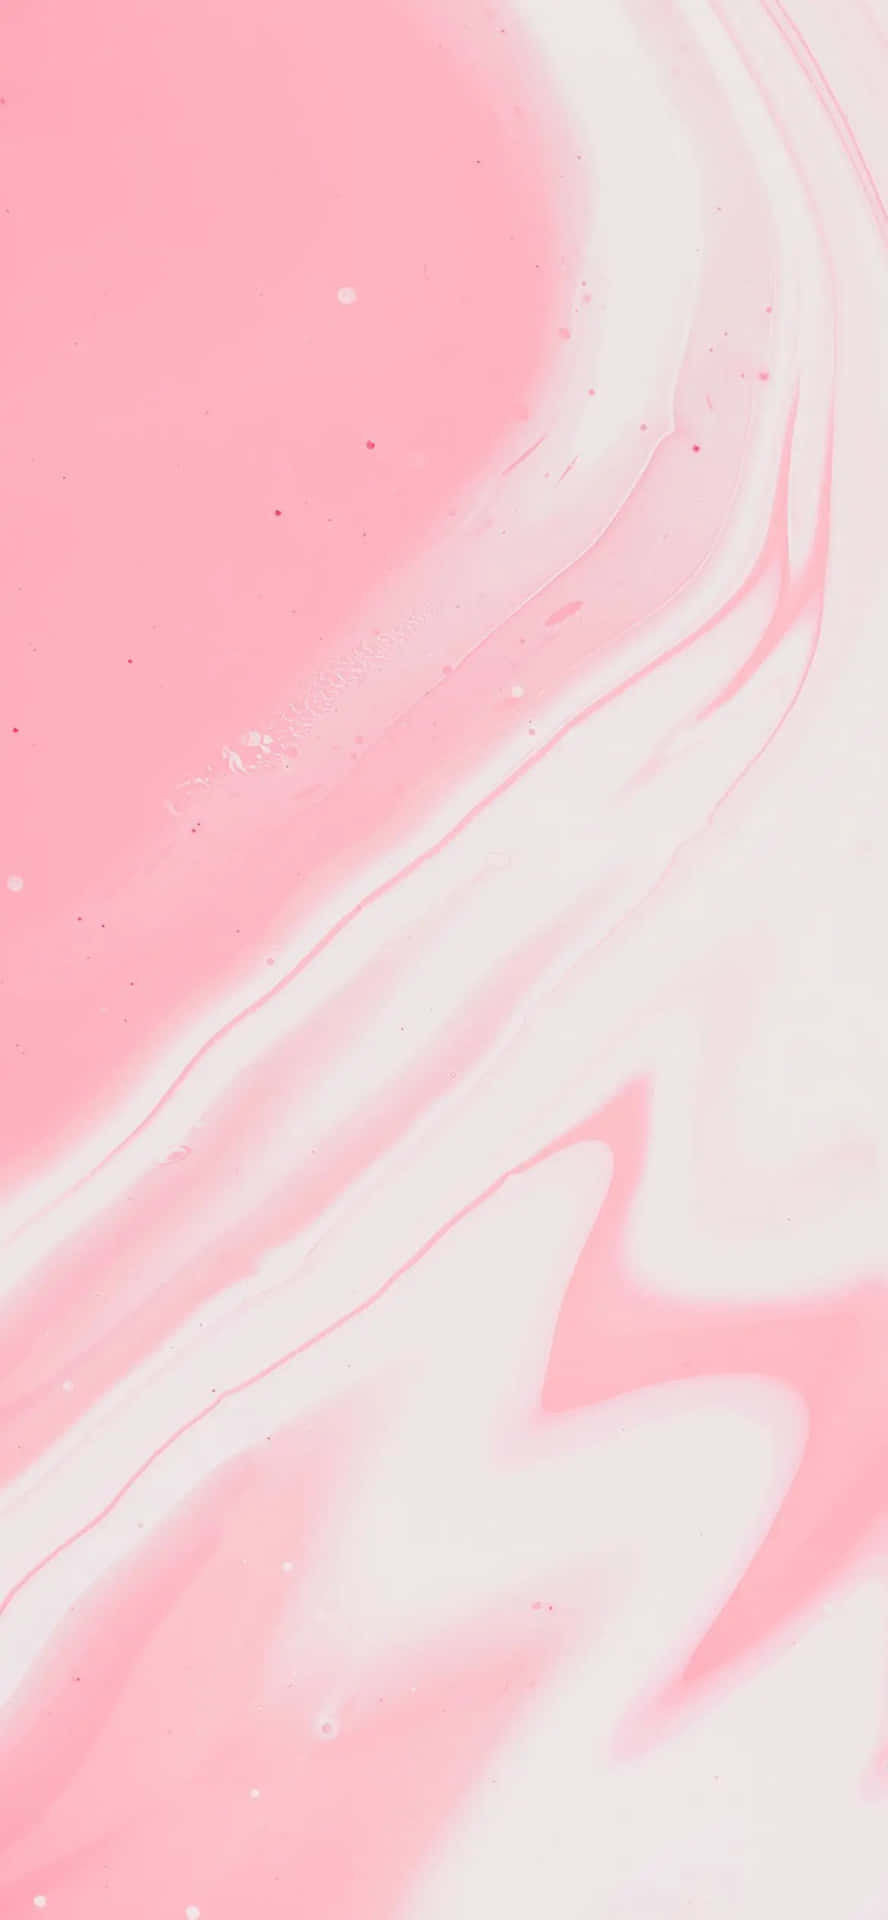 Umabela Vista De Uma Paisagem Cor-de-rosa.